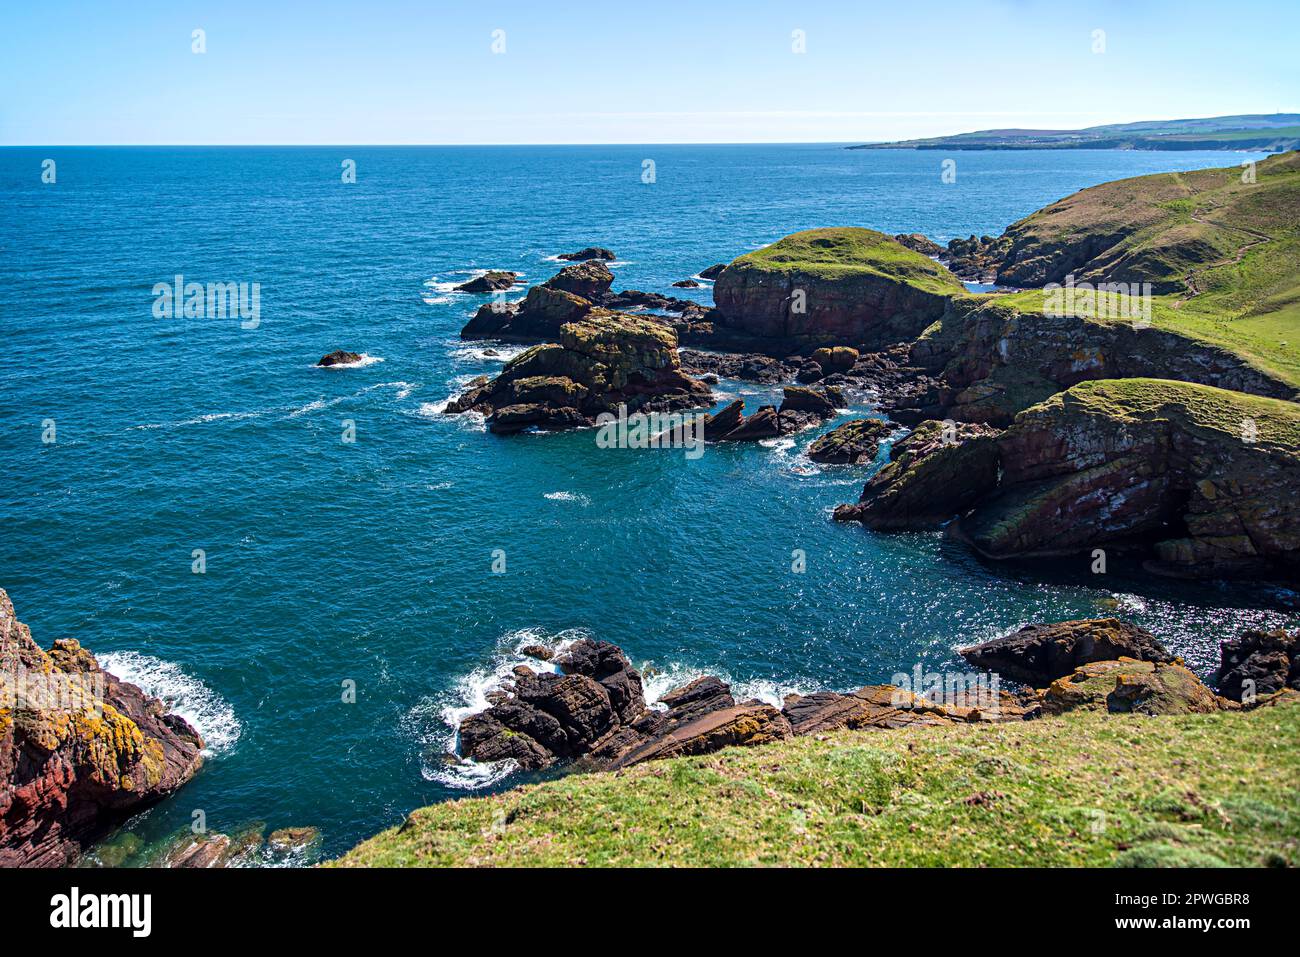 Fotografia di paesaggio della costa del Mare del Nord, serenità, paesaggi, panorama, scogliera, Shore, Coastline, Coast, Seascape, Regno Unito, Scozia Foto Stock